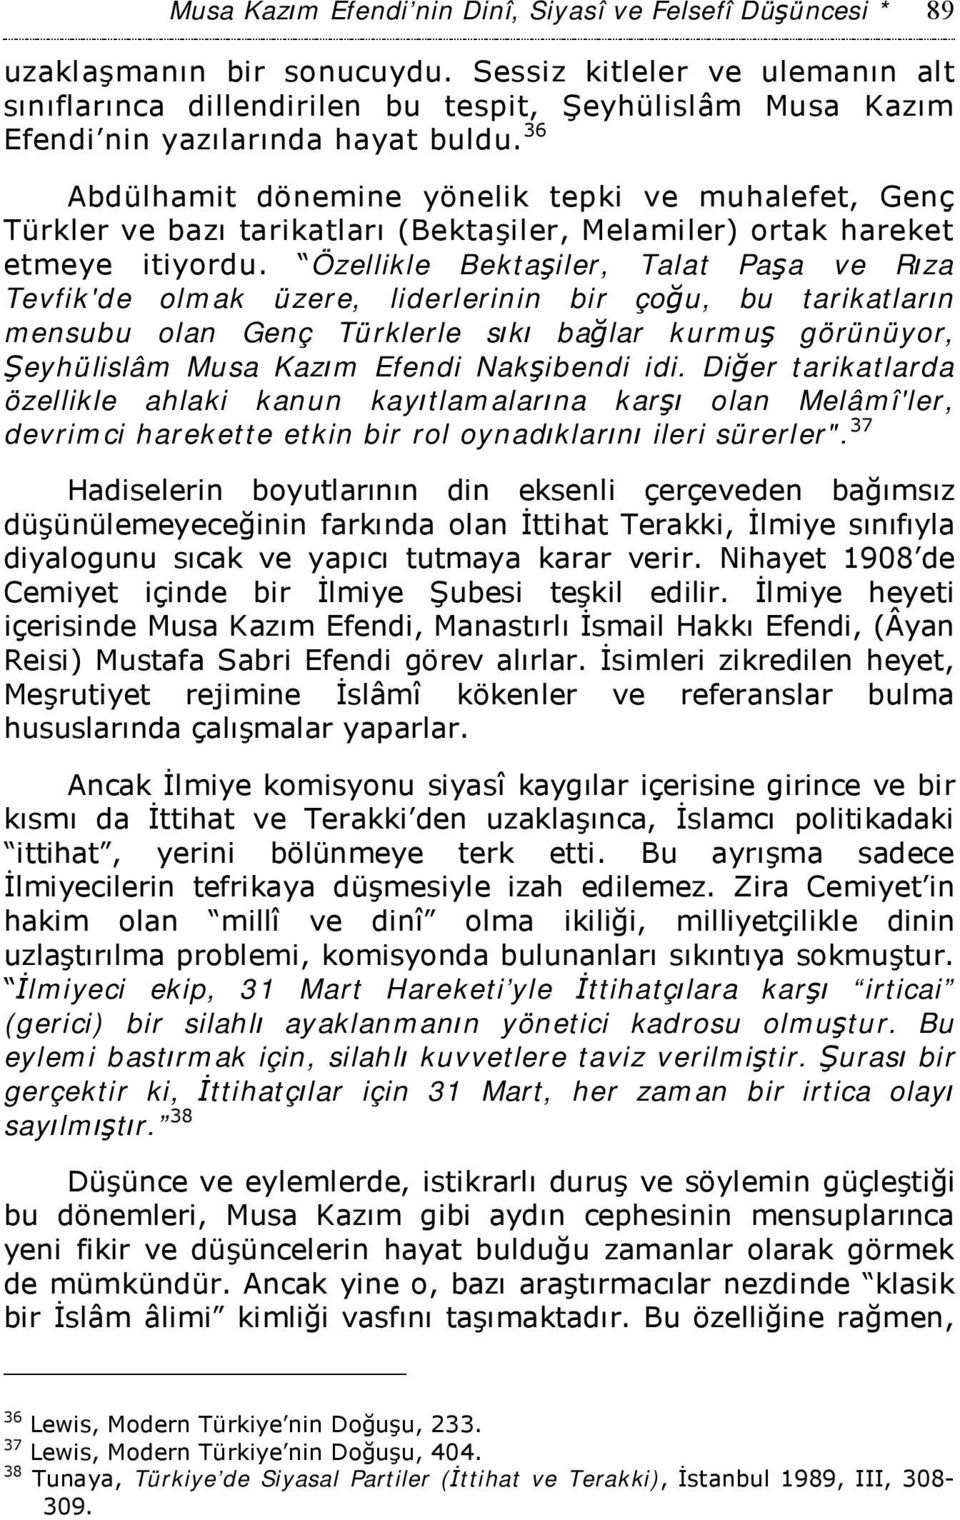 36 Abdülhamit dönemine yönelik tepki ve muhalefet, Genç Türkler ve bazı tarikatları (Bektaşiler, Melamiler) ortak hareket etmeye itiyordu.